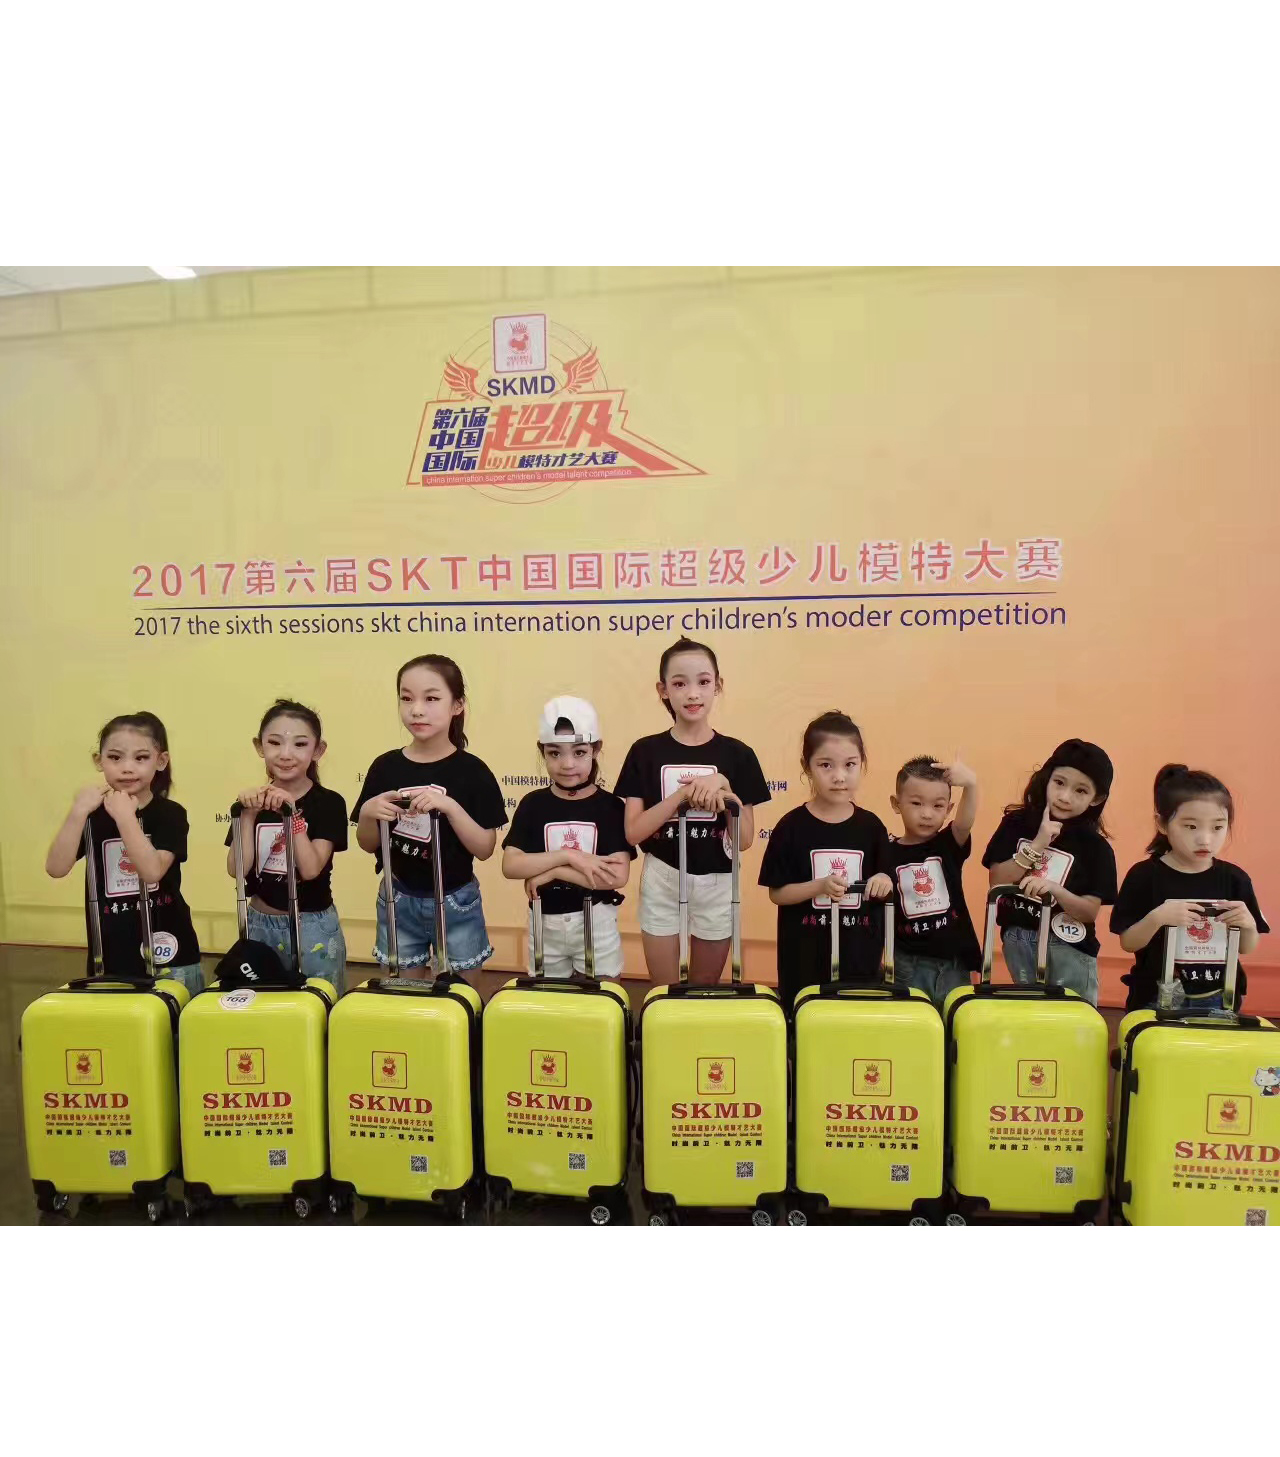 第六届SKMD中国国际超级少儿模特大赛合照